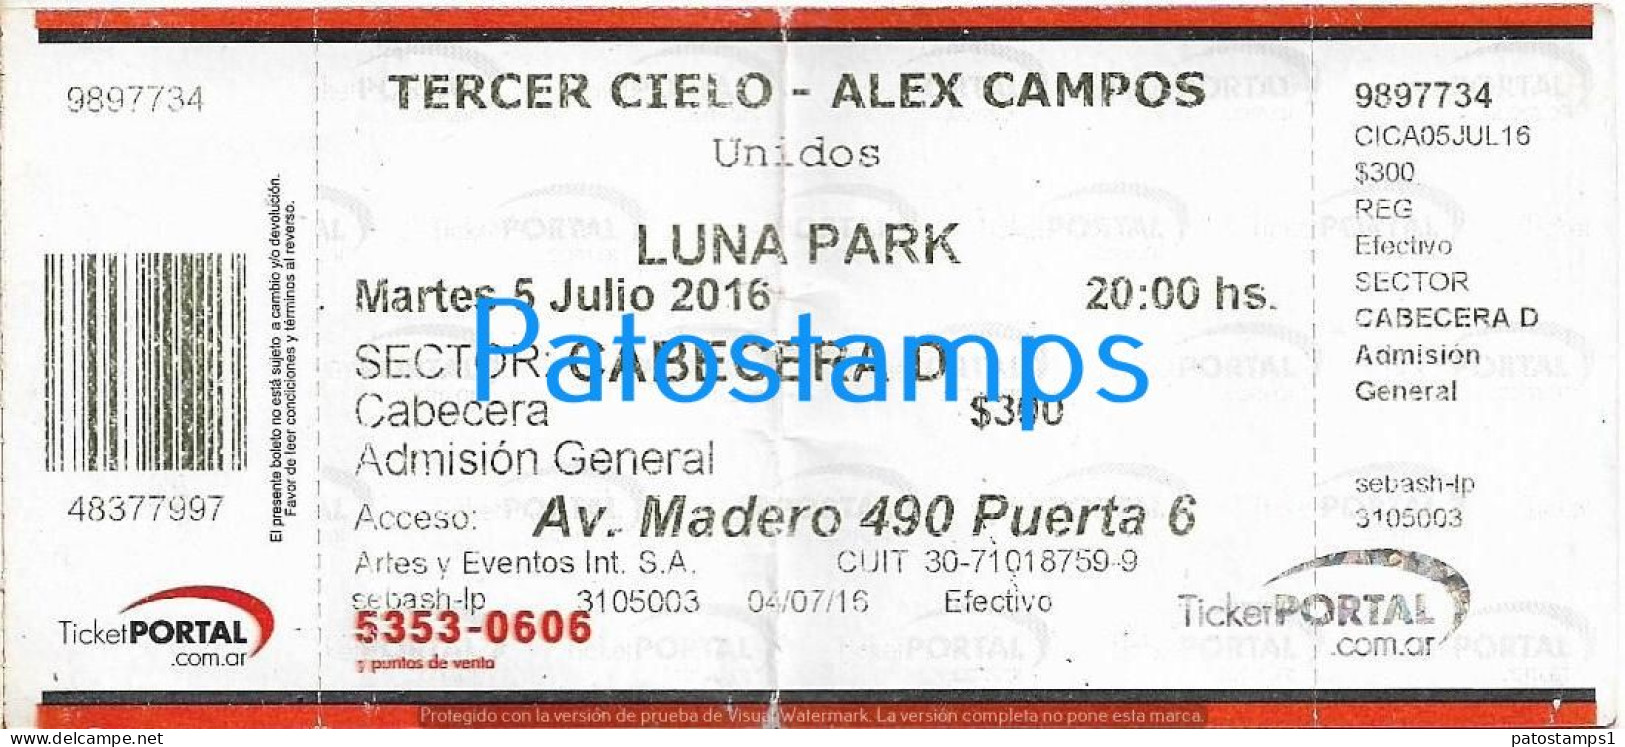 228825 ARTIST TERCER CIELO - ALEX CAMPOS REP DOMINICANA IN ARGENTINA LUNA PARK AÑO 2016 ENTRADA TICKET NO POSTCARD - Tickets - Vouchers